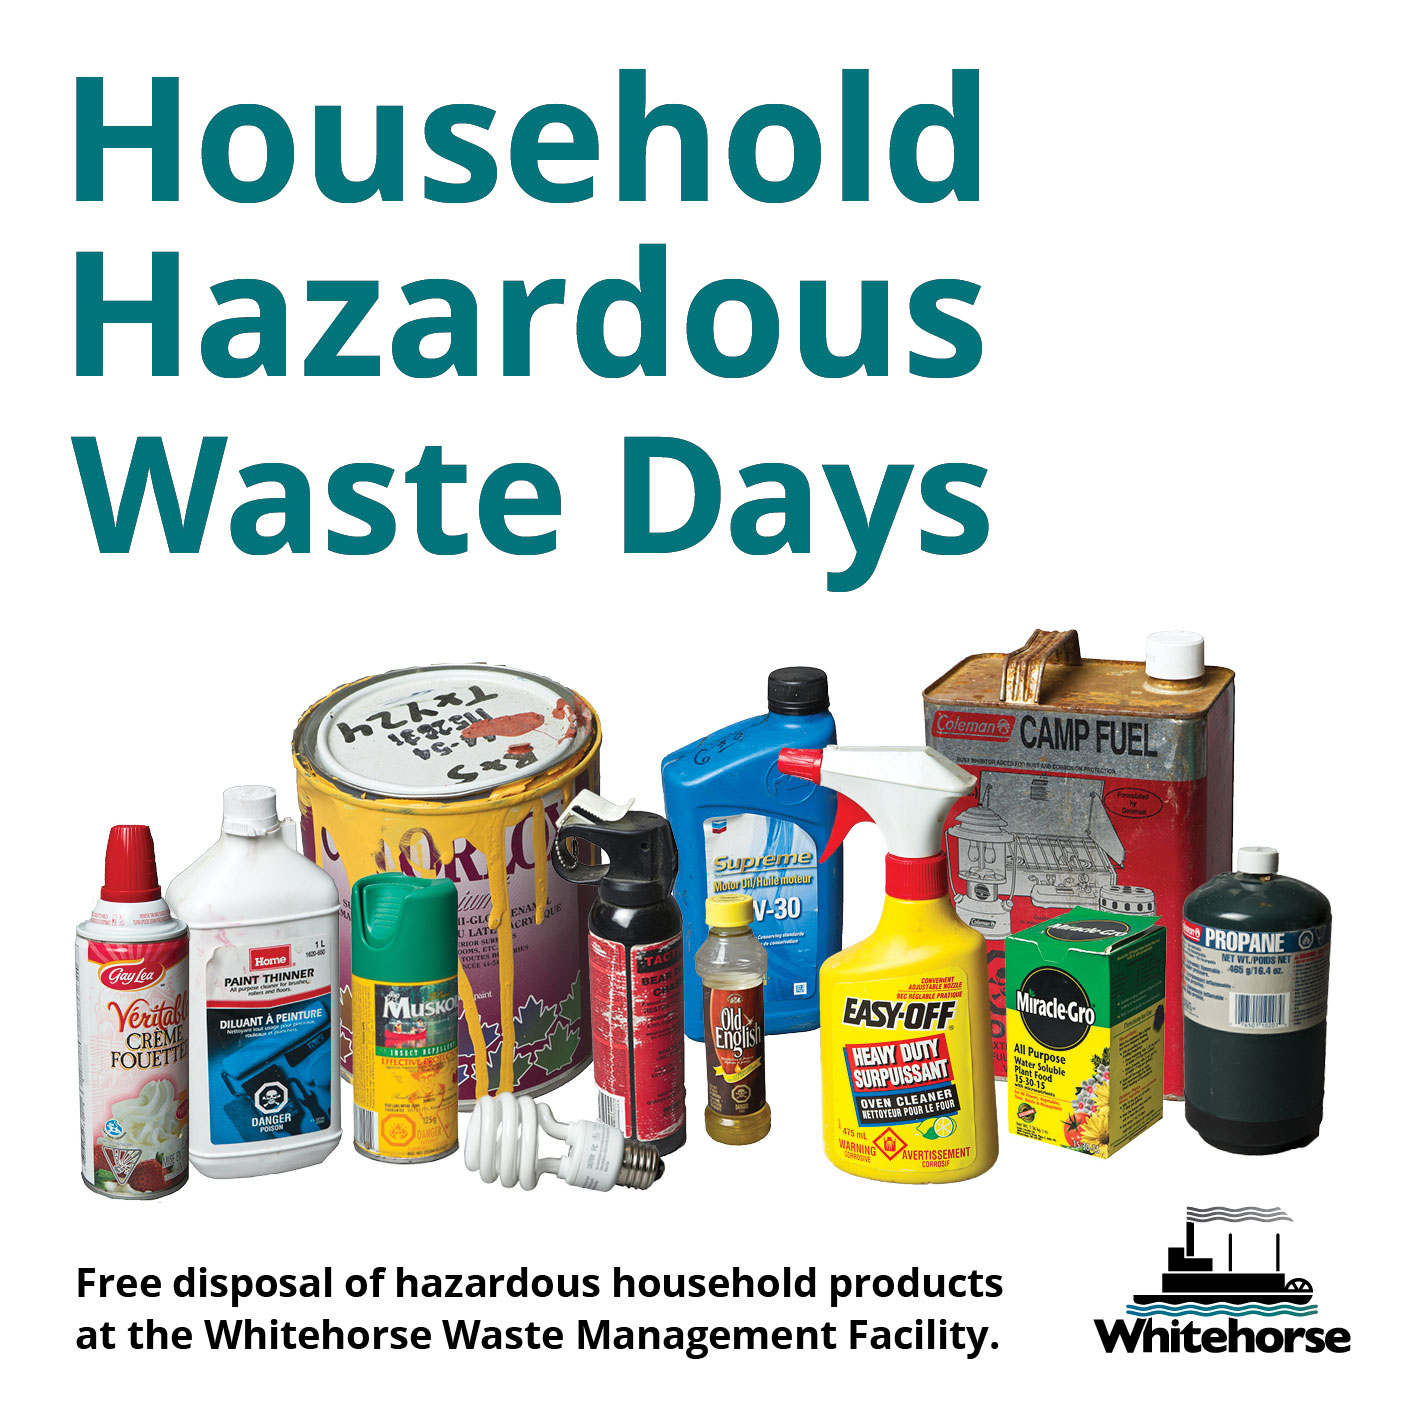 Household hazardous waste day